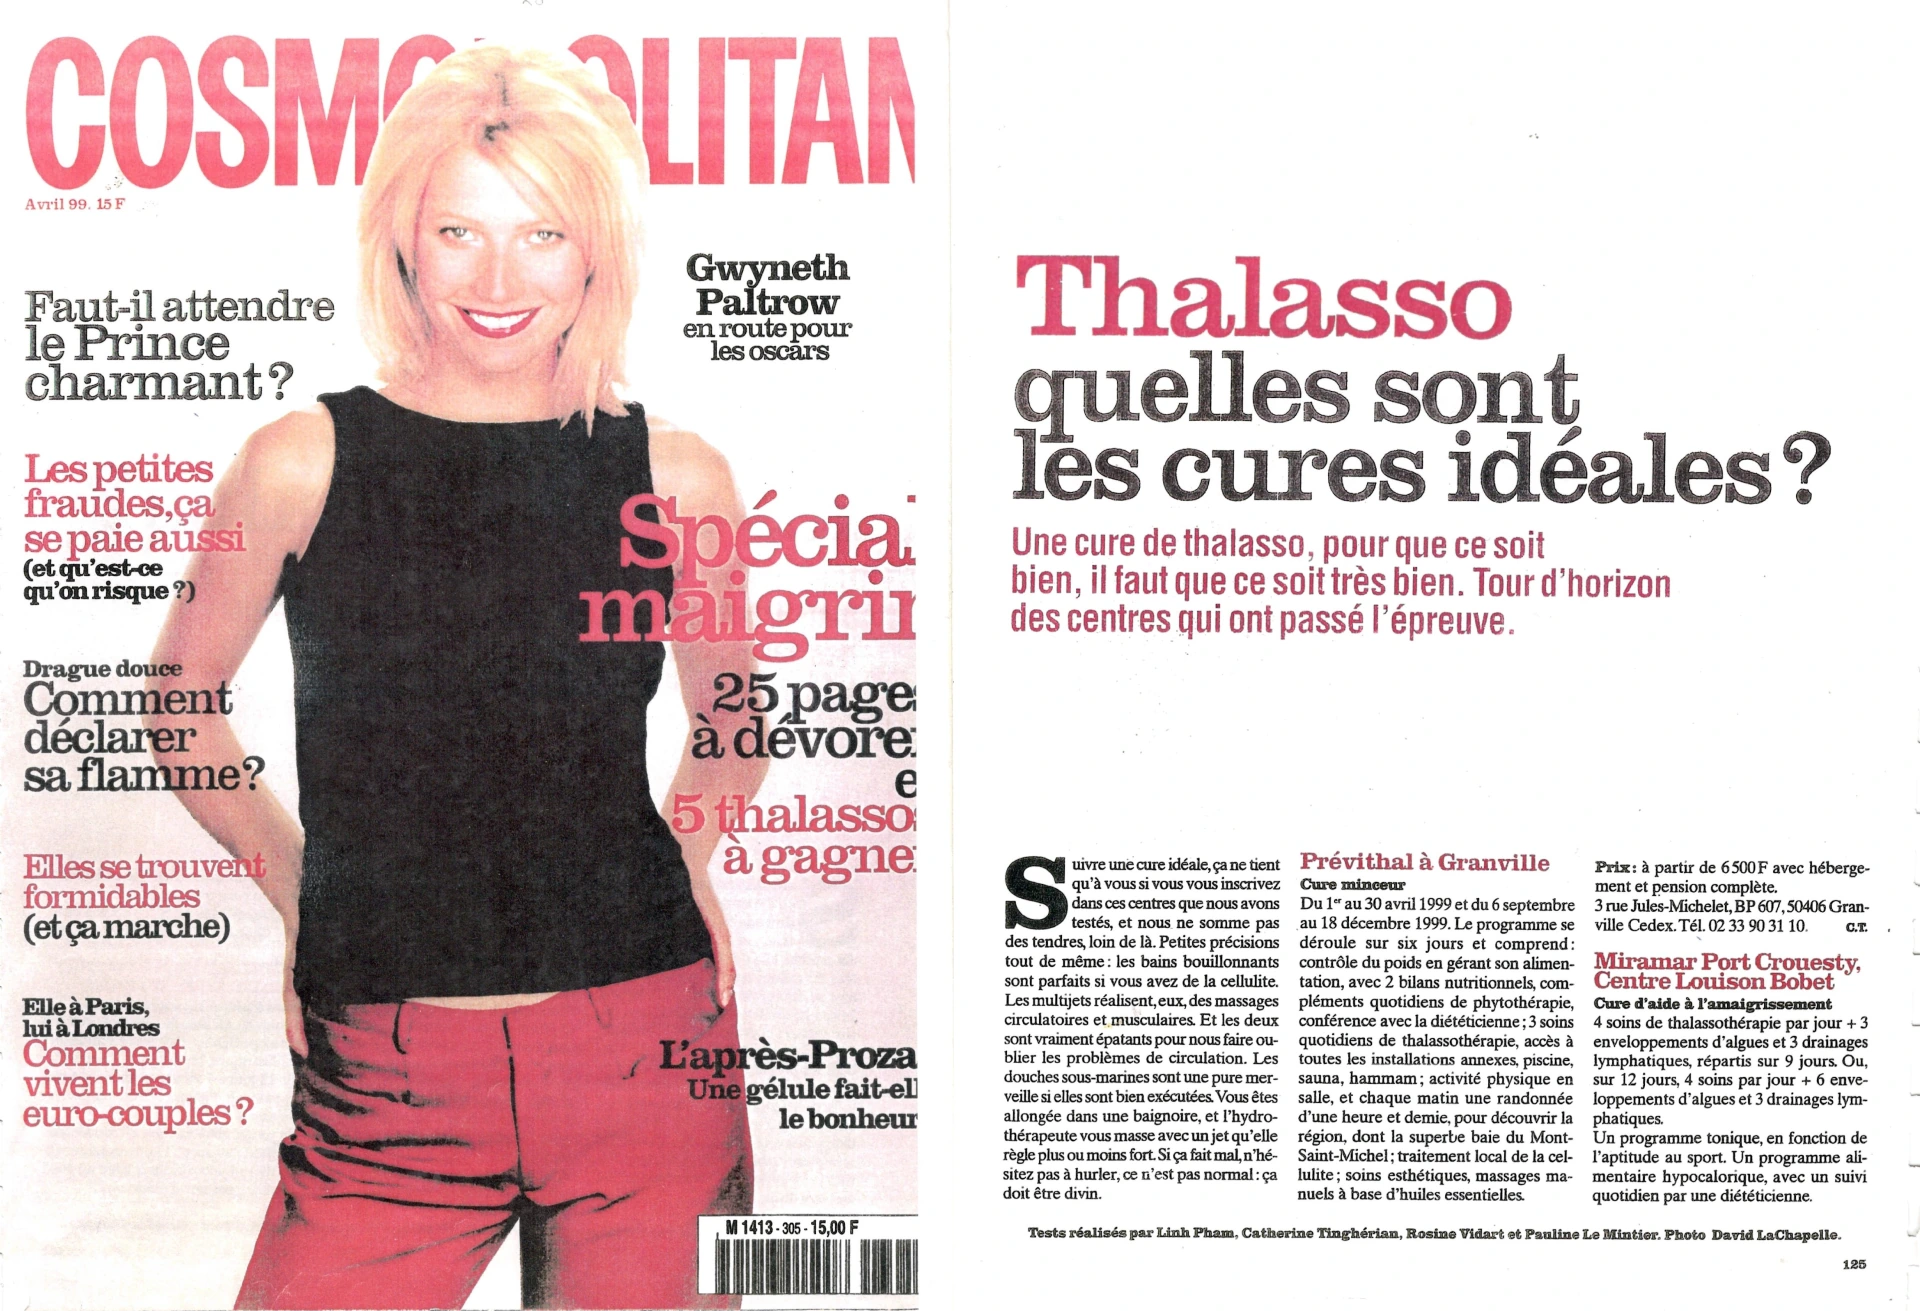 Cosmopolitan - Thalasso Quelles Sont Les Cures Ideales